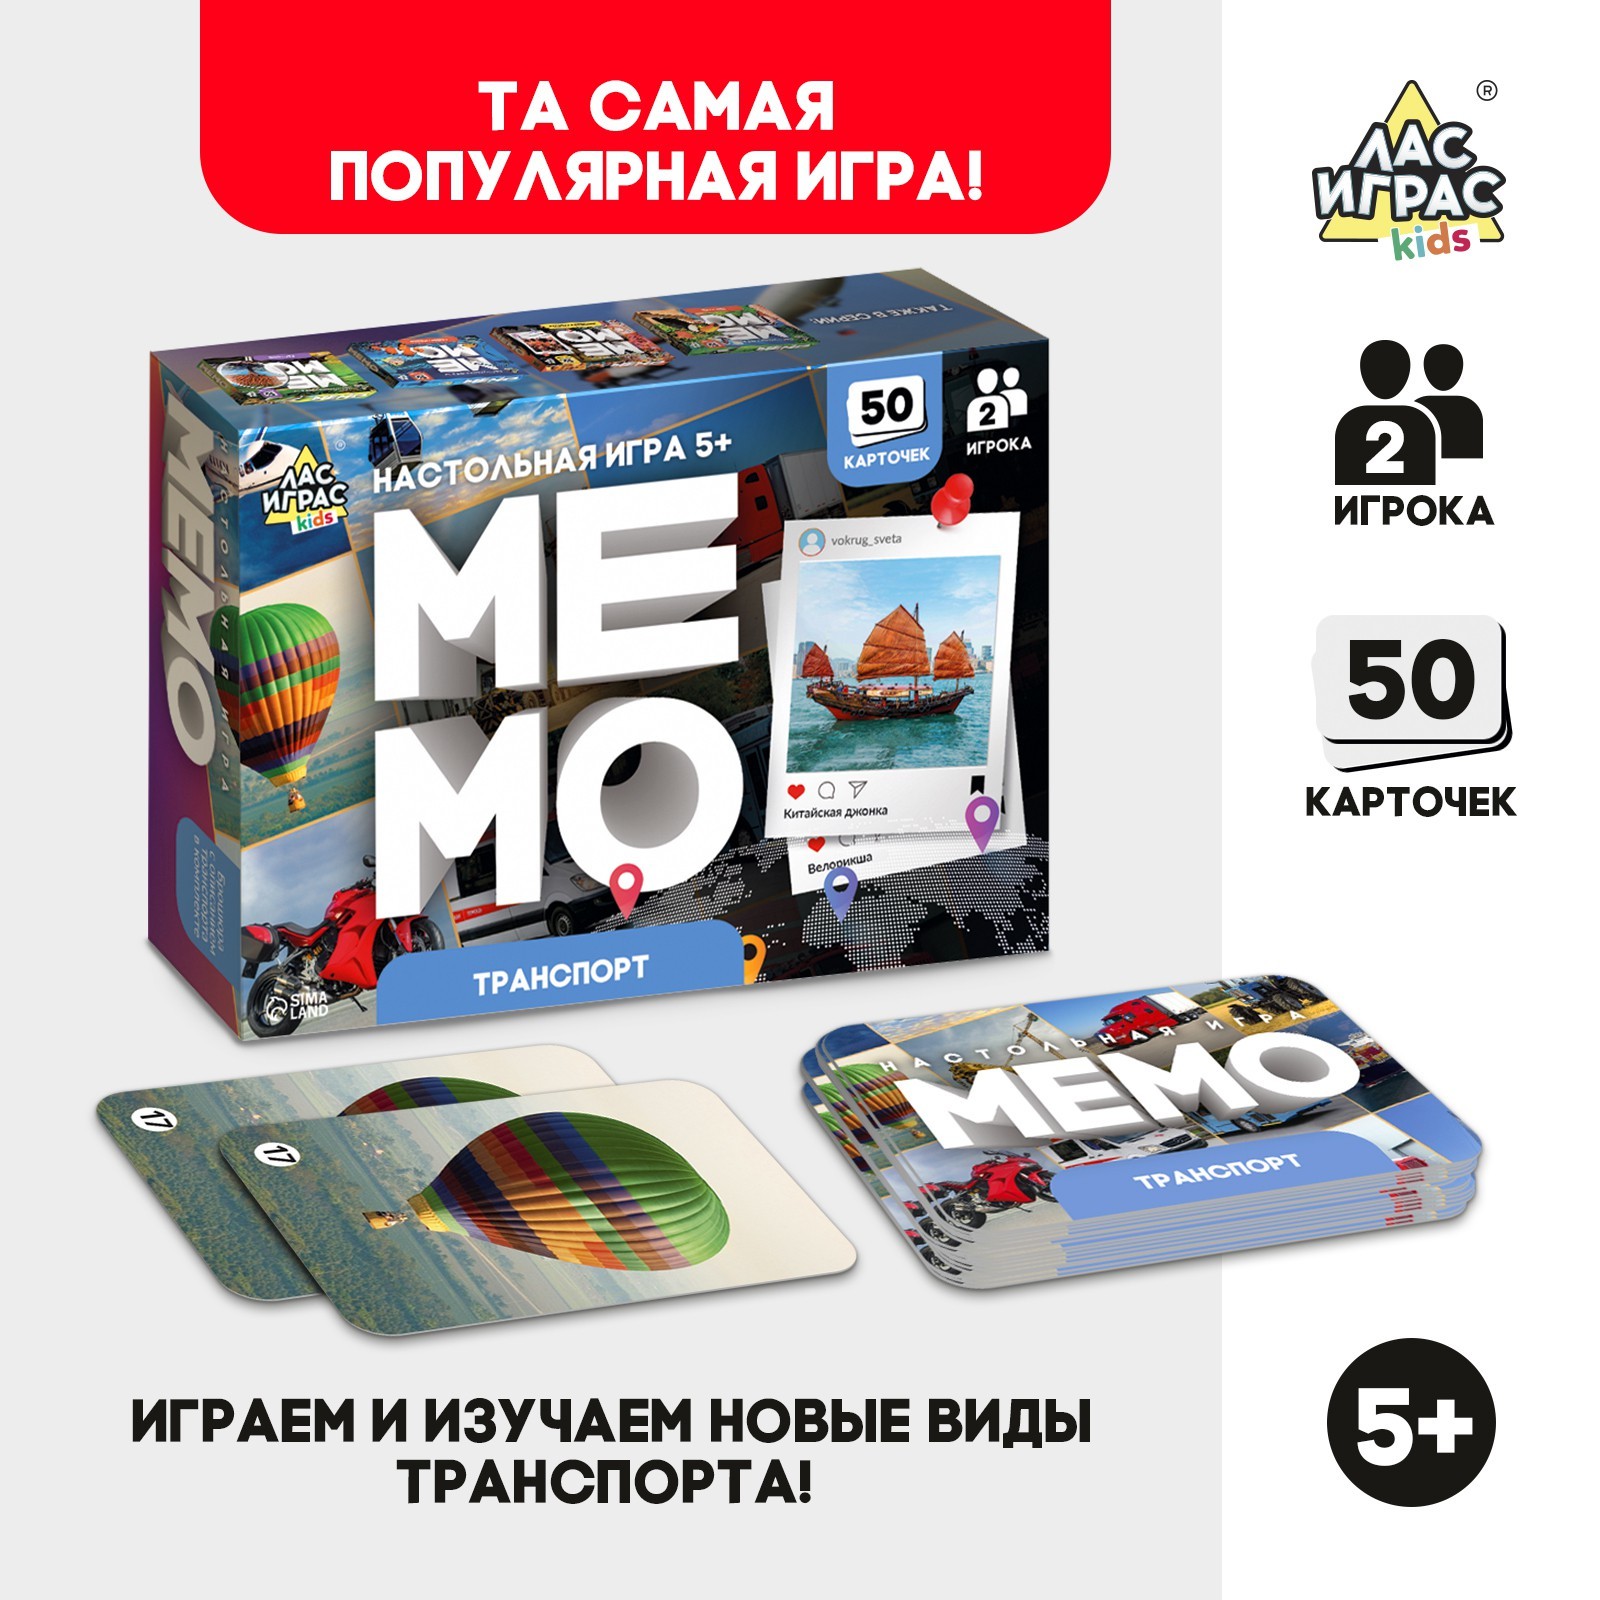 Настольная игра Мемо Лас Играс KIDS Транспорт, 50 карт мемо лас играс kids мировая культура